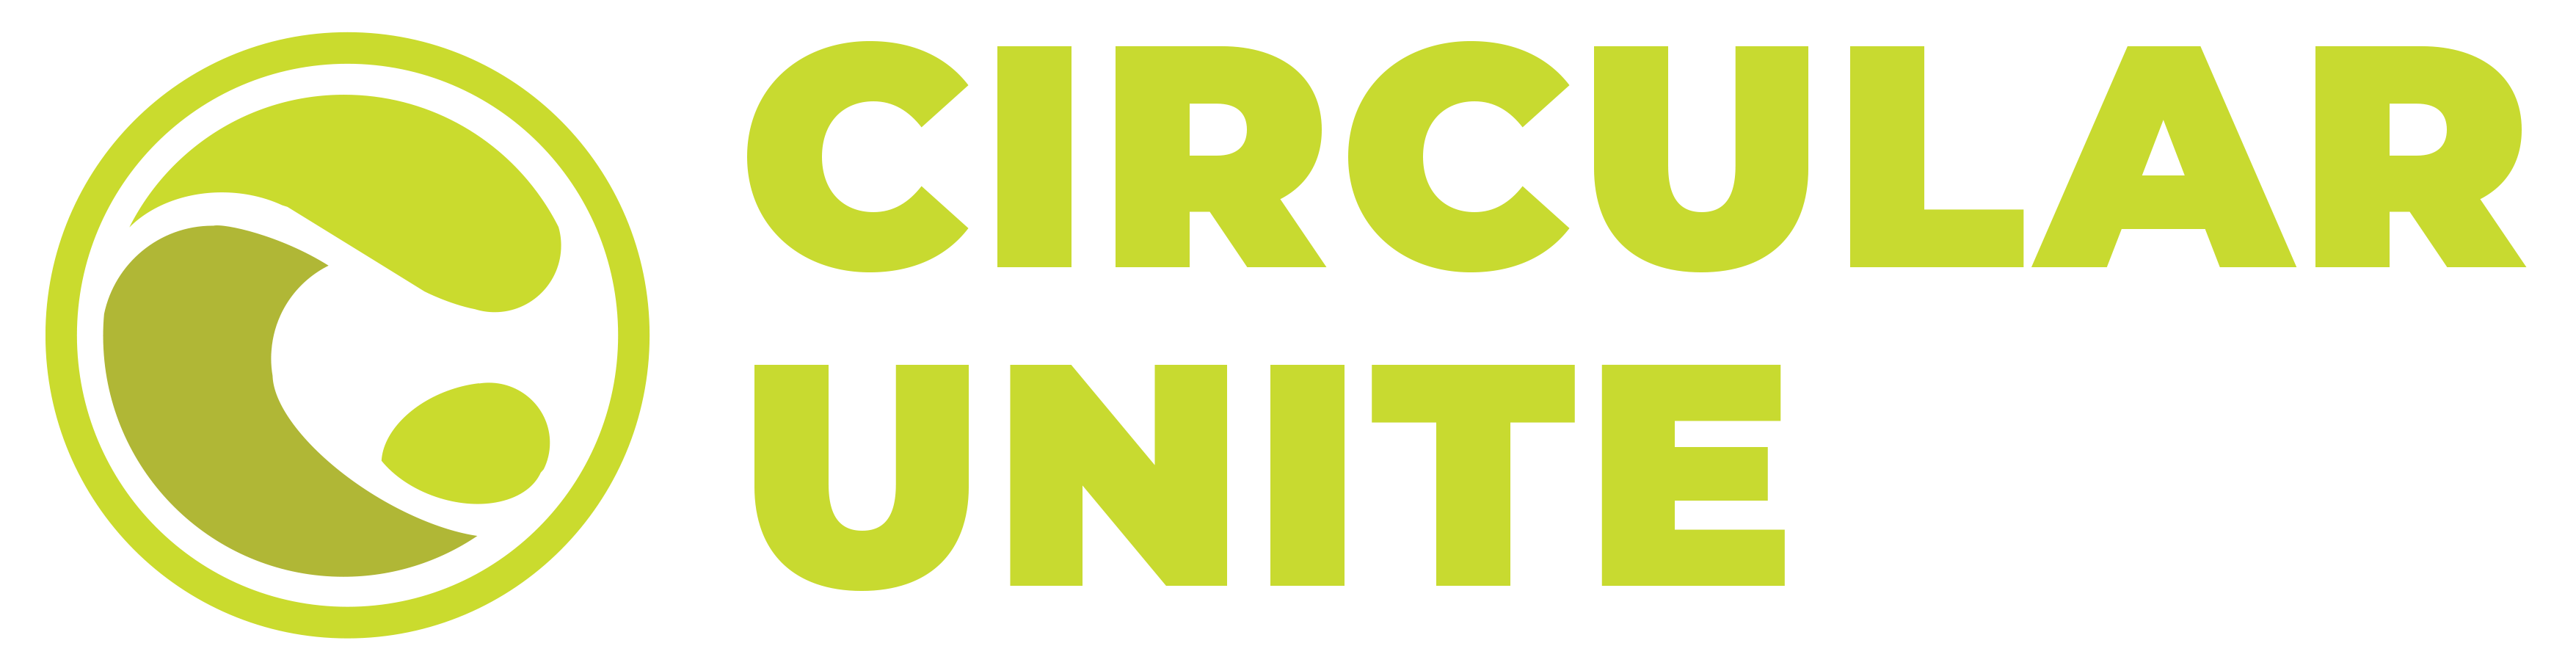 Circular Unite hi-res-stack